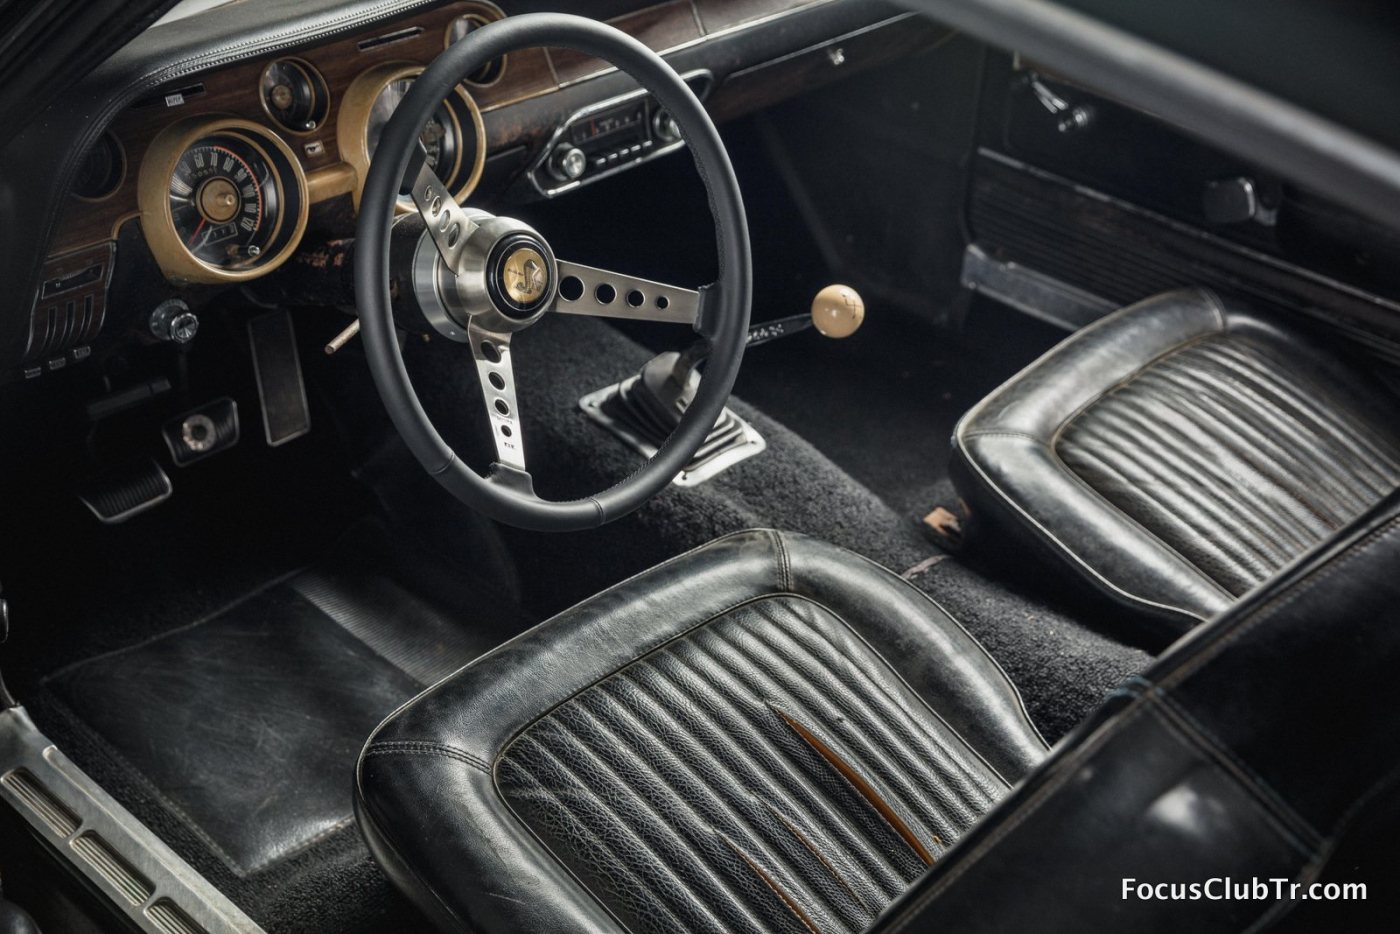 Original-1968-Mustang-Bullitt-interior-1.jpg